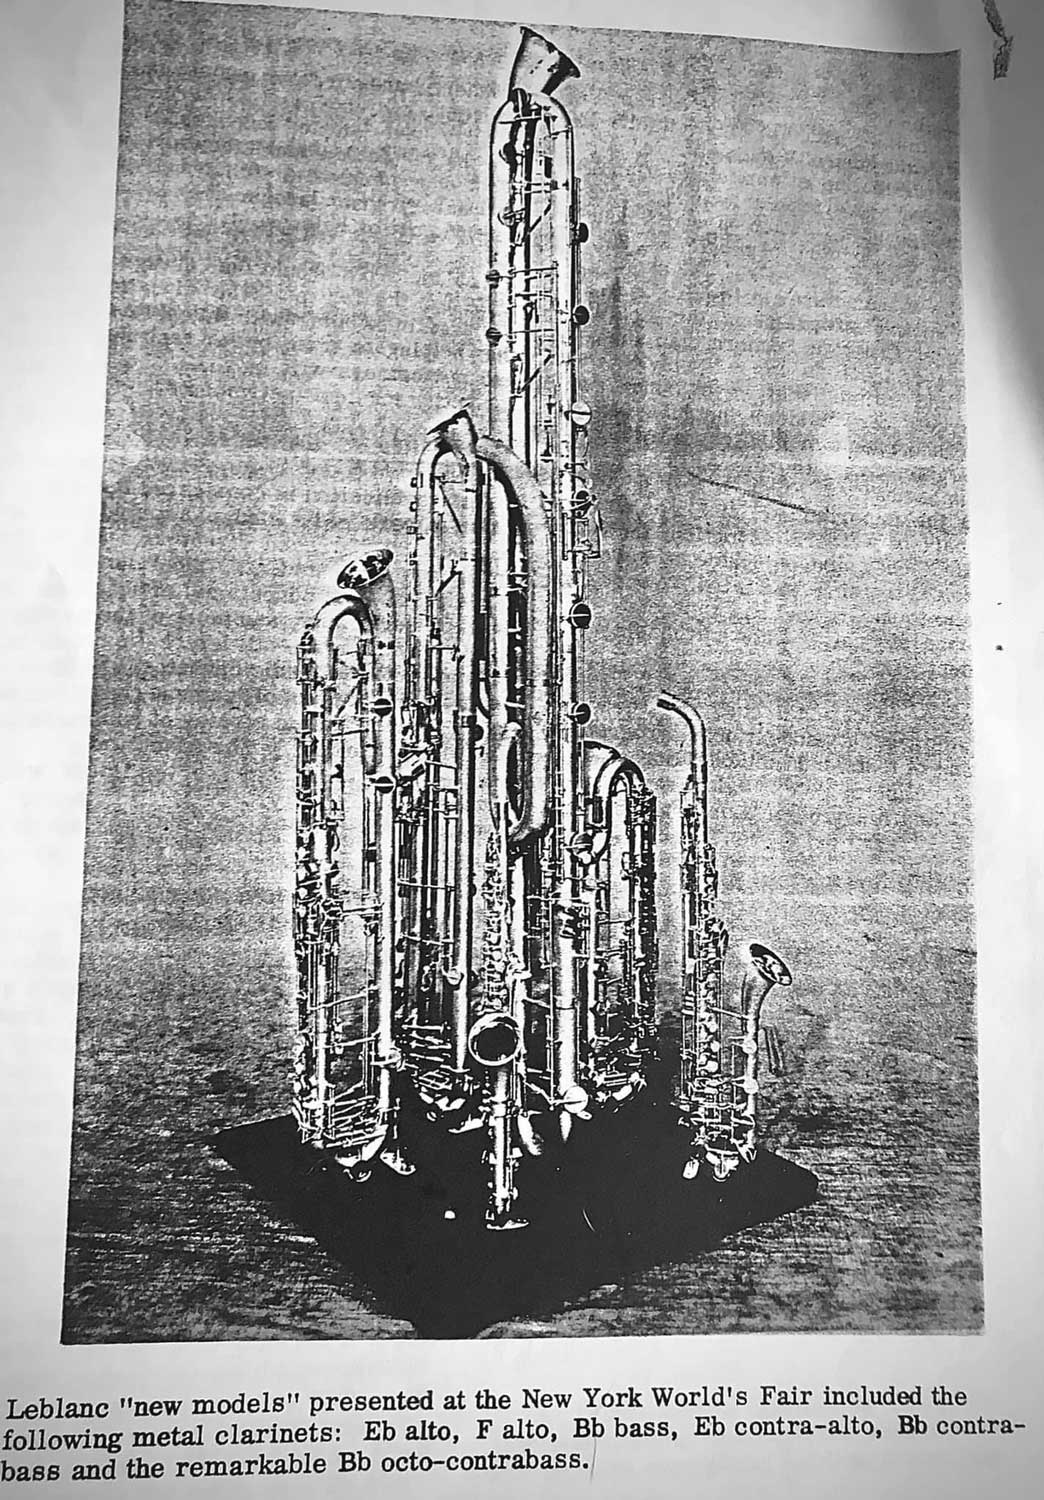 Valentin cases : Totalités des clarinettes leblanc